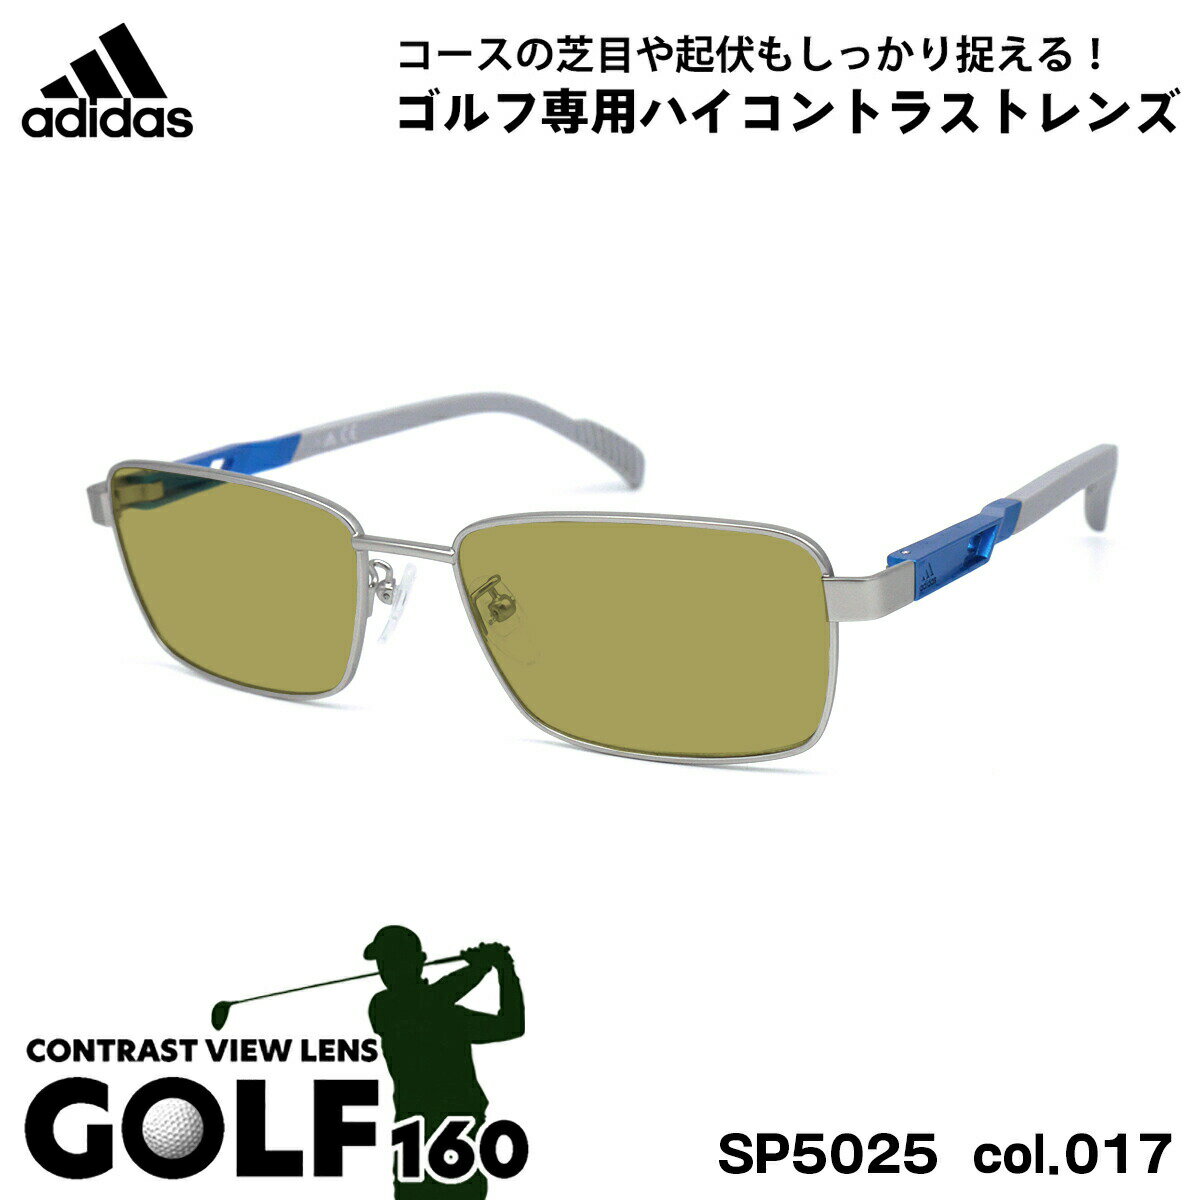 アディダス サングラス ゴルフ SP5025 (SP5025/V) col.017 55mm adidas 国内正規品 UVカット メンズ レディース GOLF160